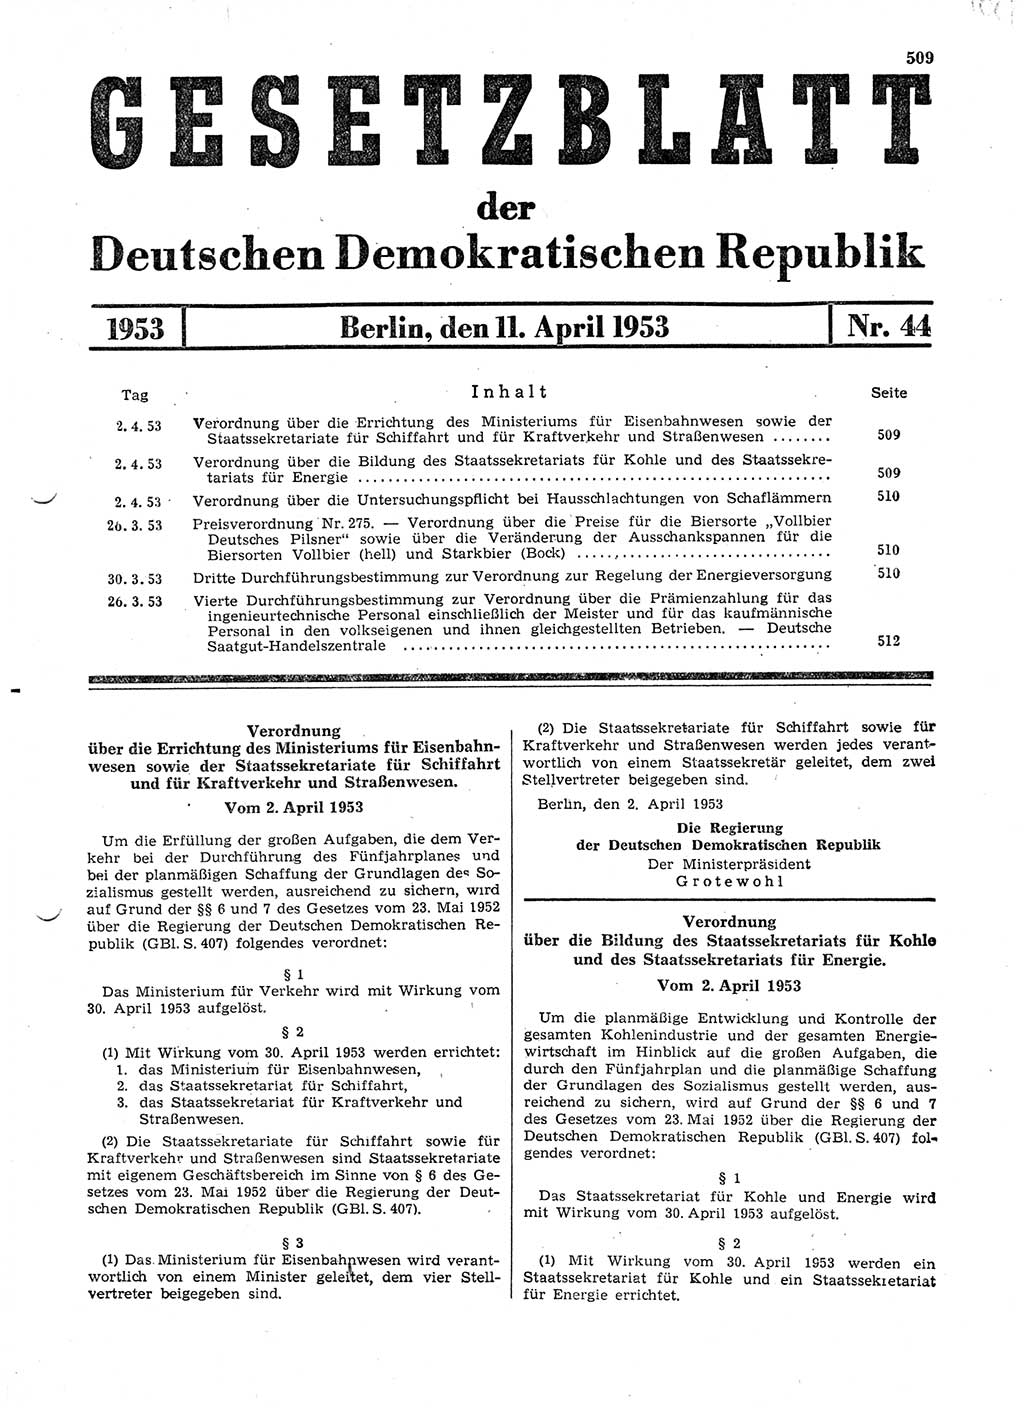 Gesetzblatt (GBl.) der Deutschen Demokratischen Republik (DDR) 1953, Seite 509 (GBl. DDR 1953, S. 509)